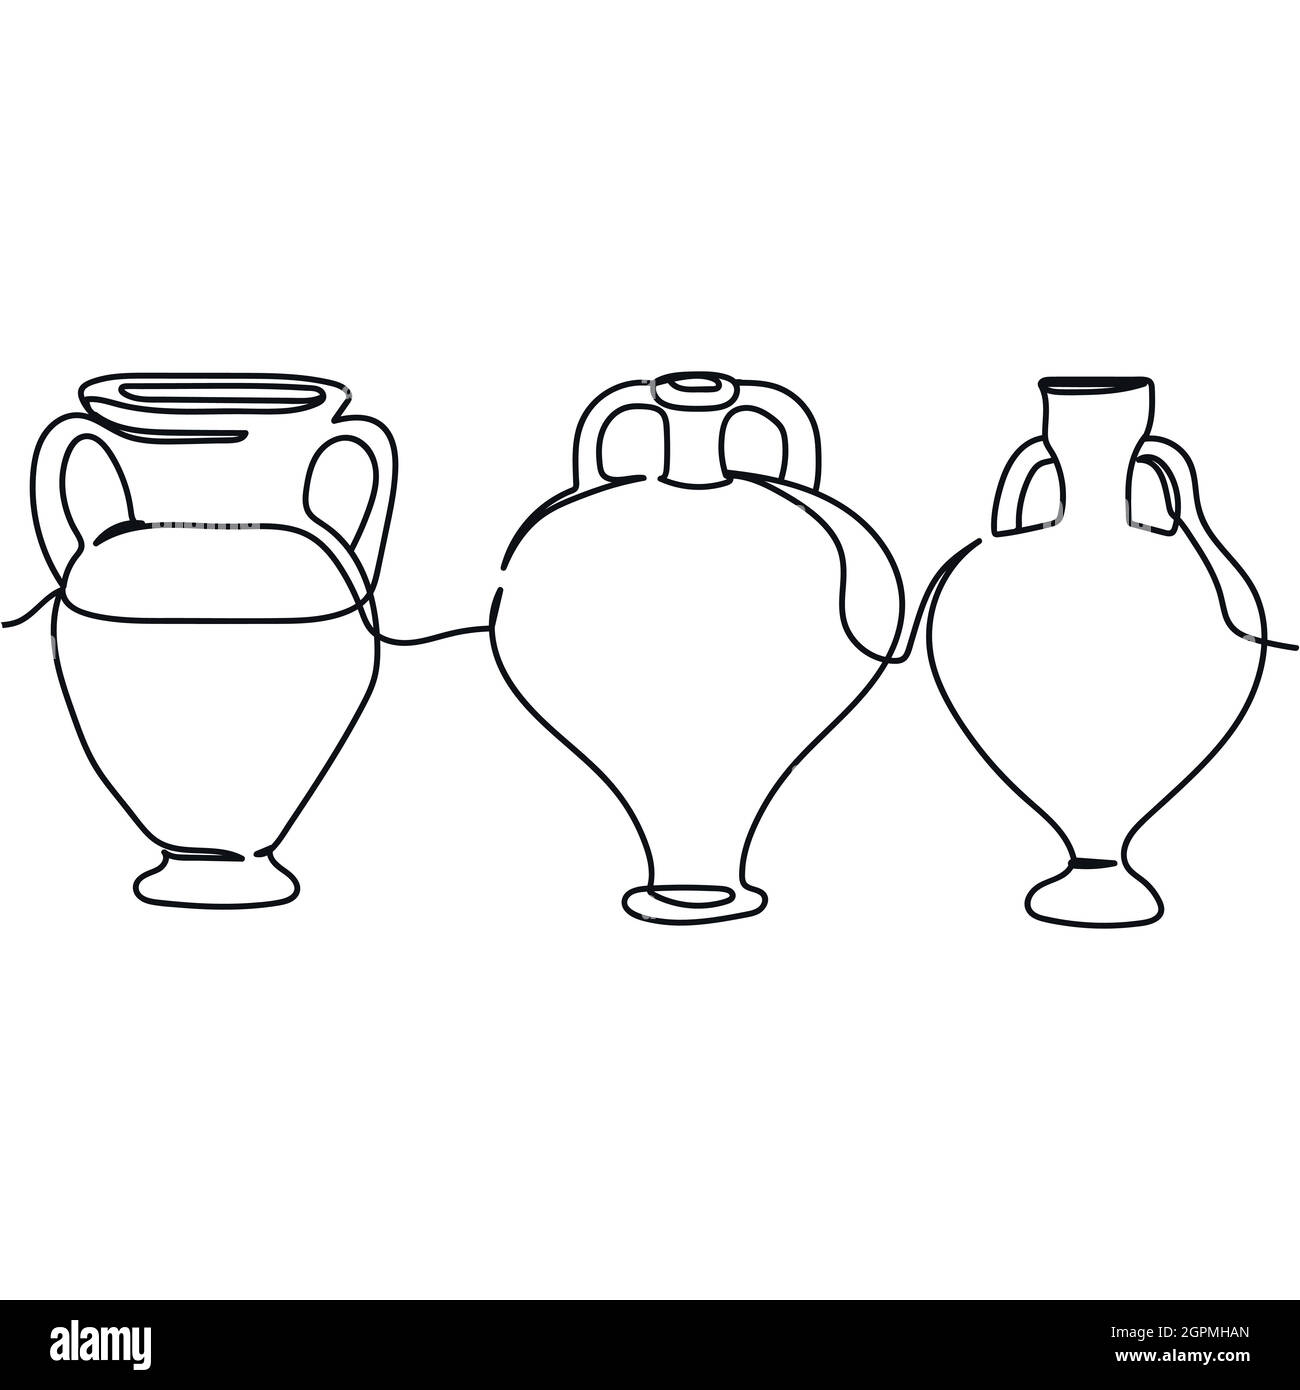 Durchgehende, eine Linie von antiken griechischen Vasen, die in Silhouette gesetzt sind. Minimalistischer Style. Perfekt für Karten, Partyeinladungen, Poster, Aufkleber, Kleidung. Schwarzes abstraktes Symbol. Stock Vektor